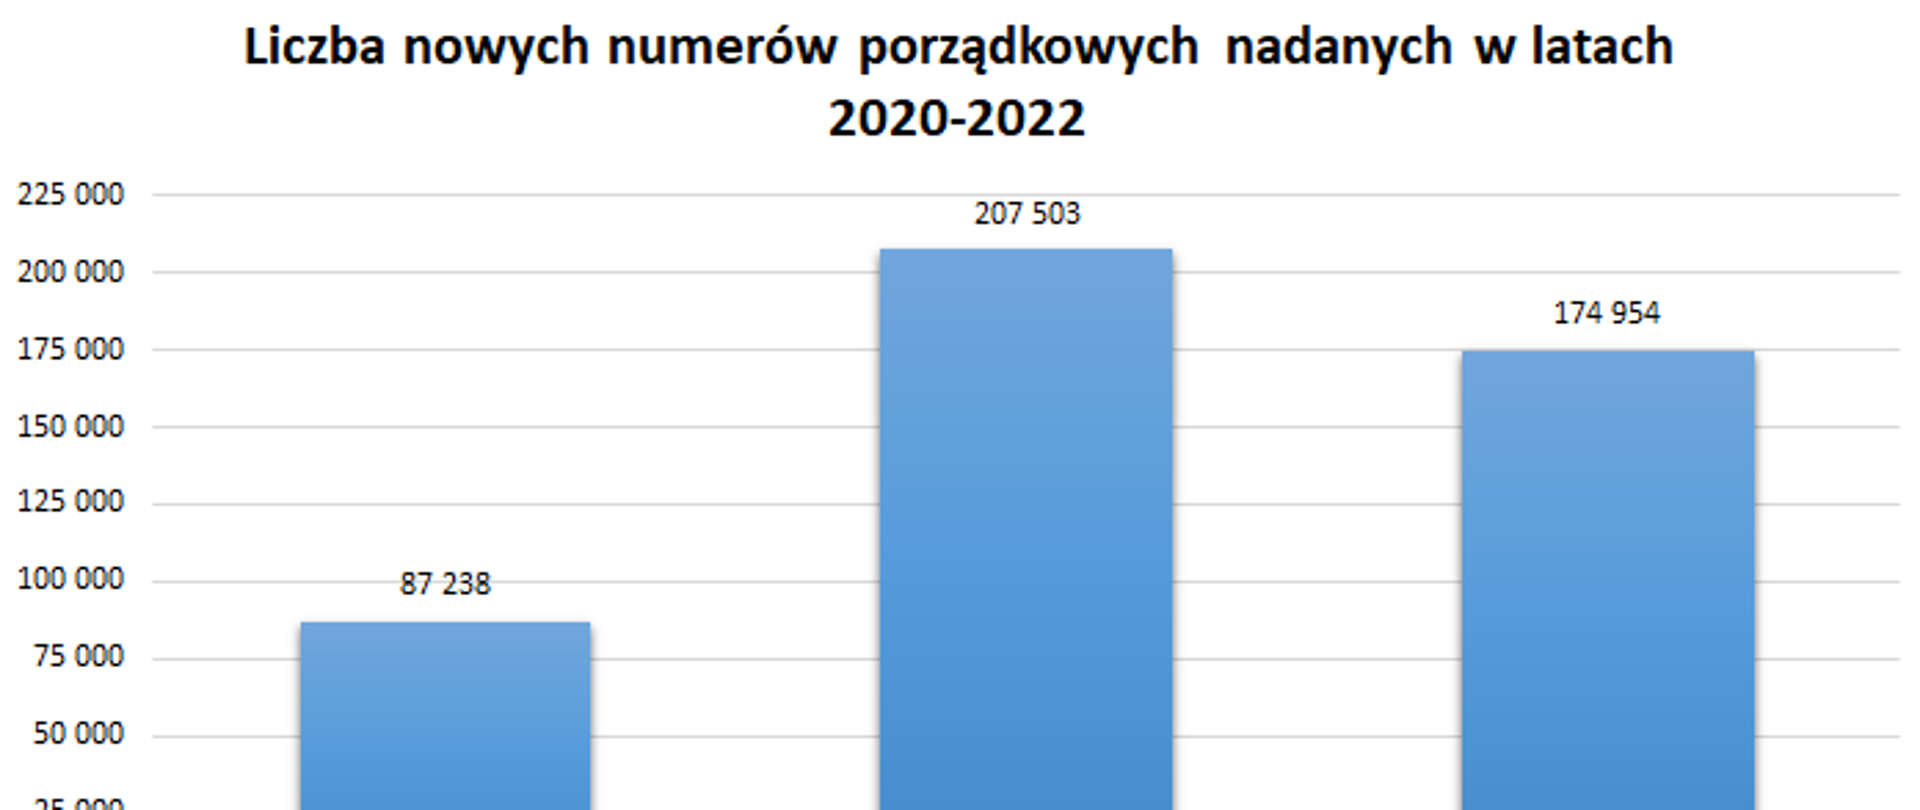 Wykres przedstawiający liczbę nowych numerów porządkowych nadanych w latach 2020-2022: 2020-87238, 2021-207503, 2022-174954